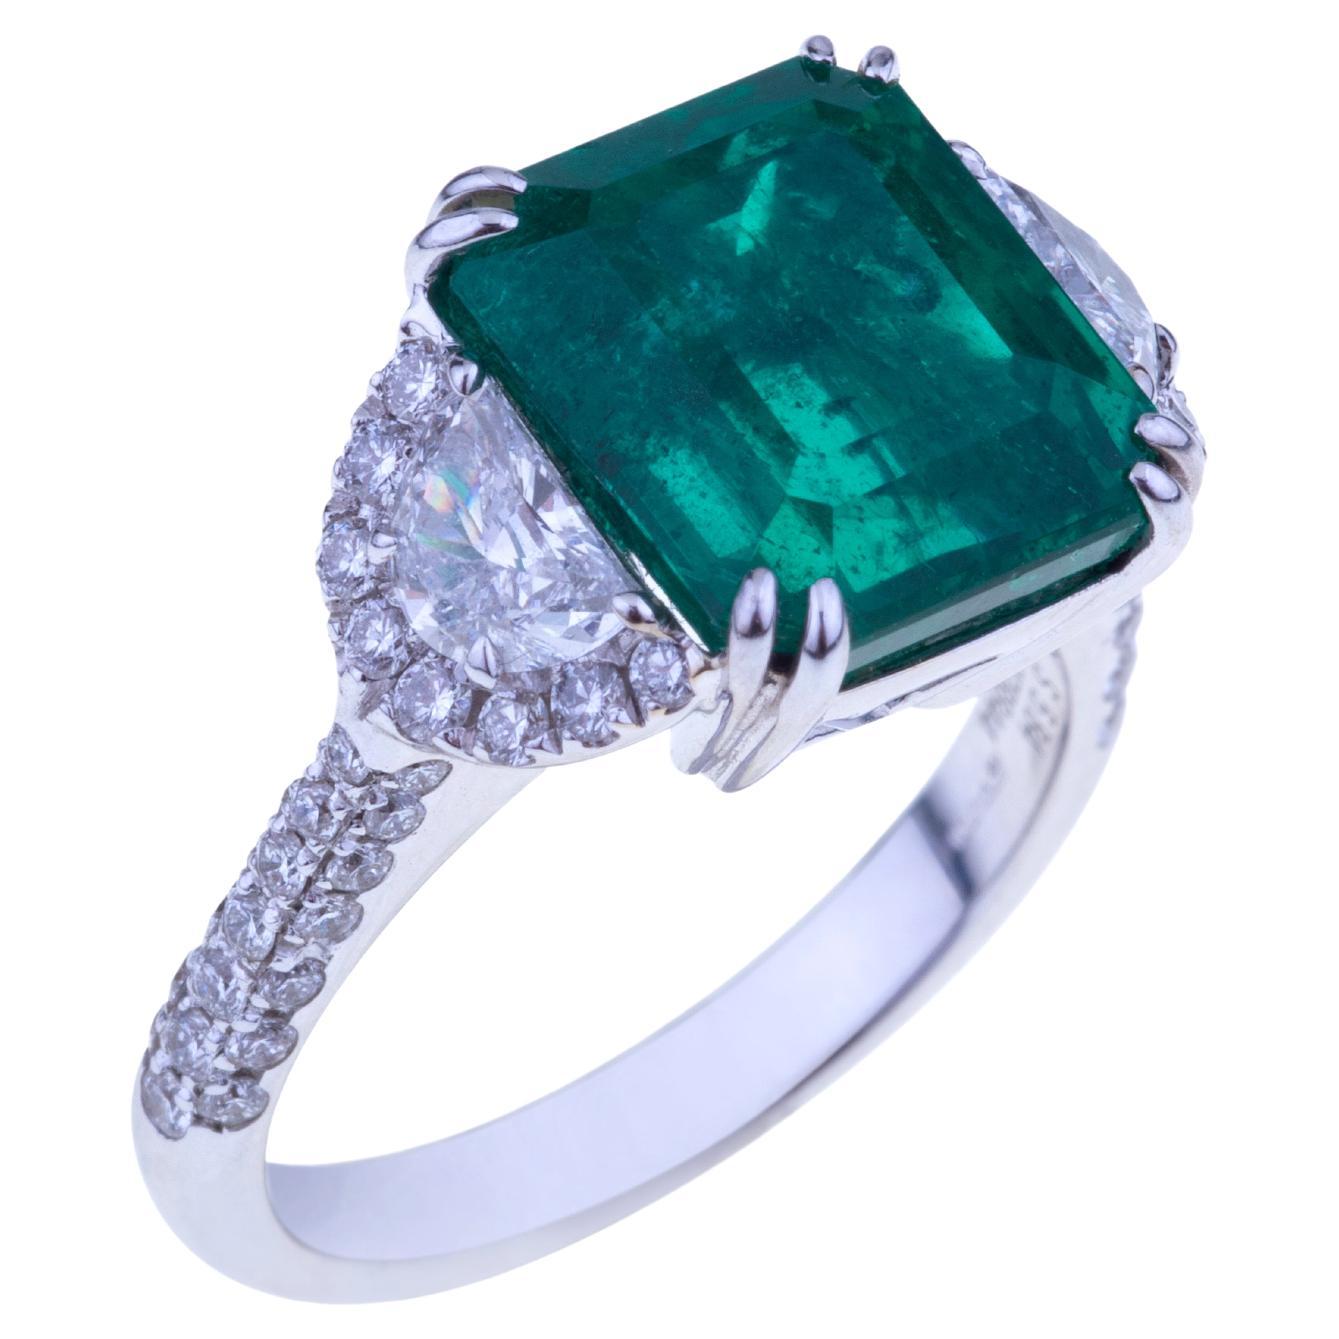 Atemberaubender Smaragd-Ring ct. 5,84 mit Diamanten. Einzigartiger Stein.